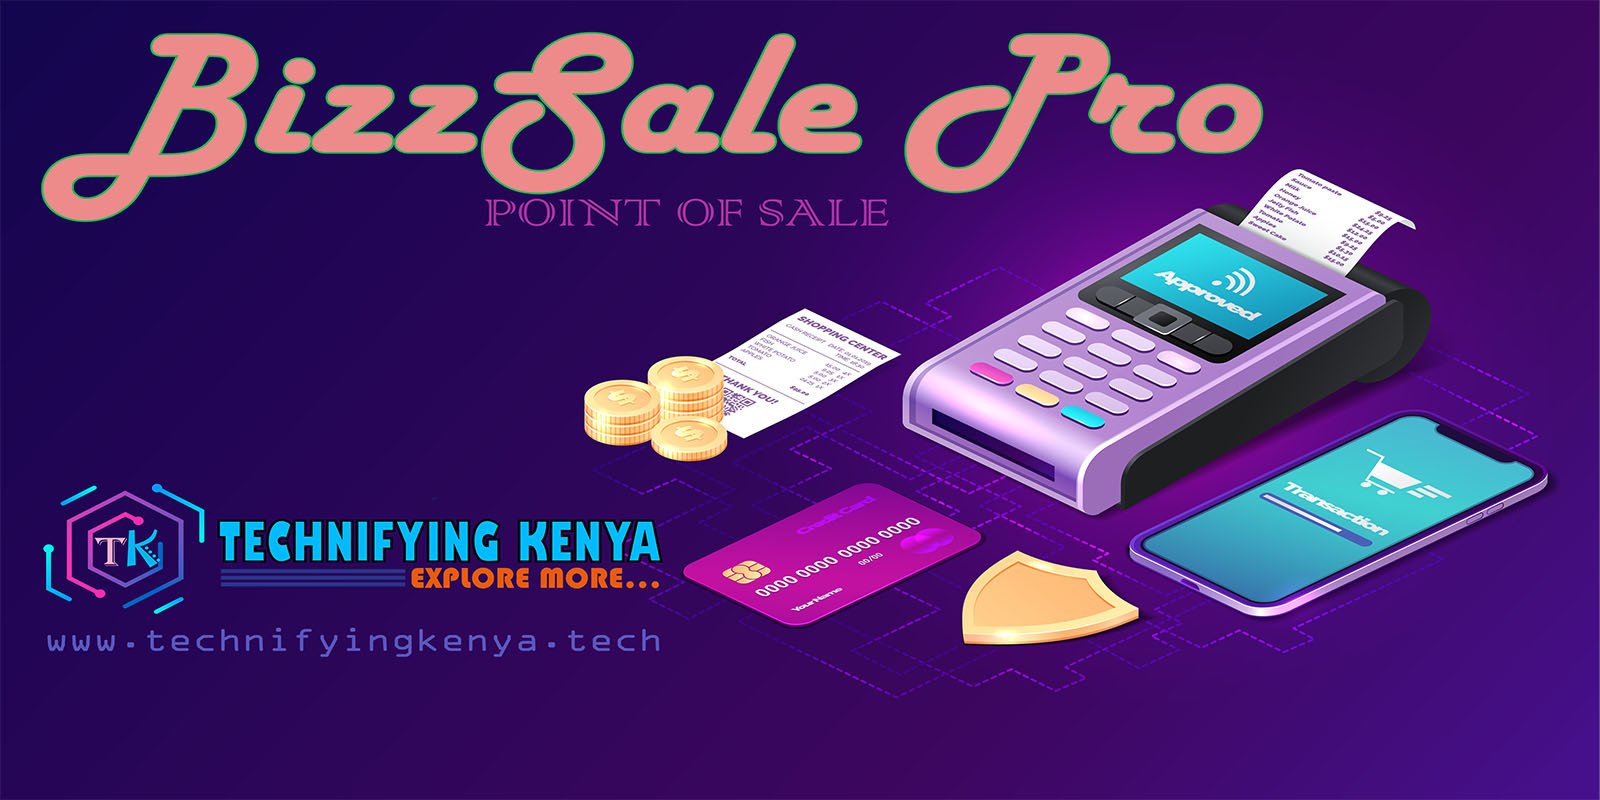 BizzSale Pro - Point of sale